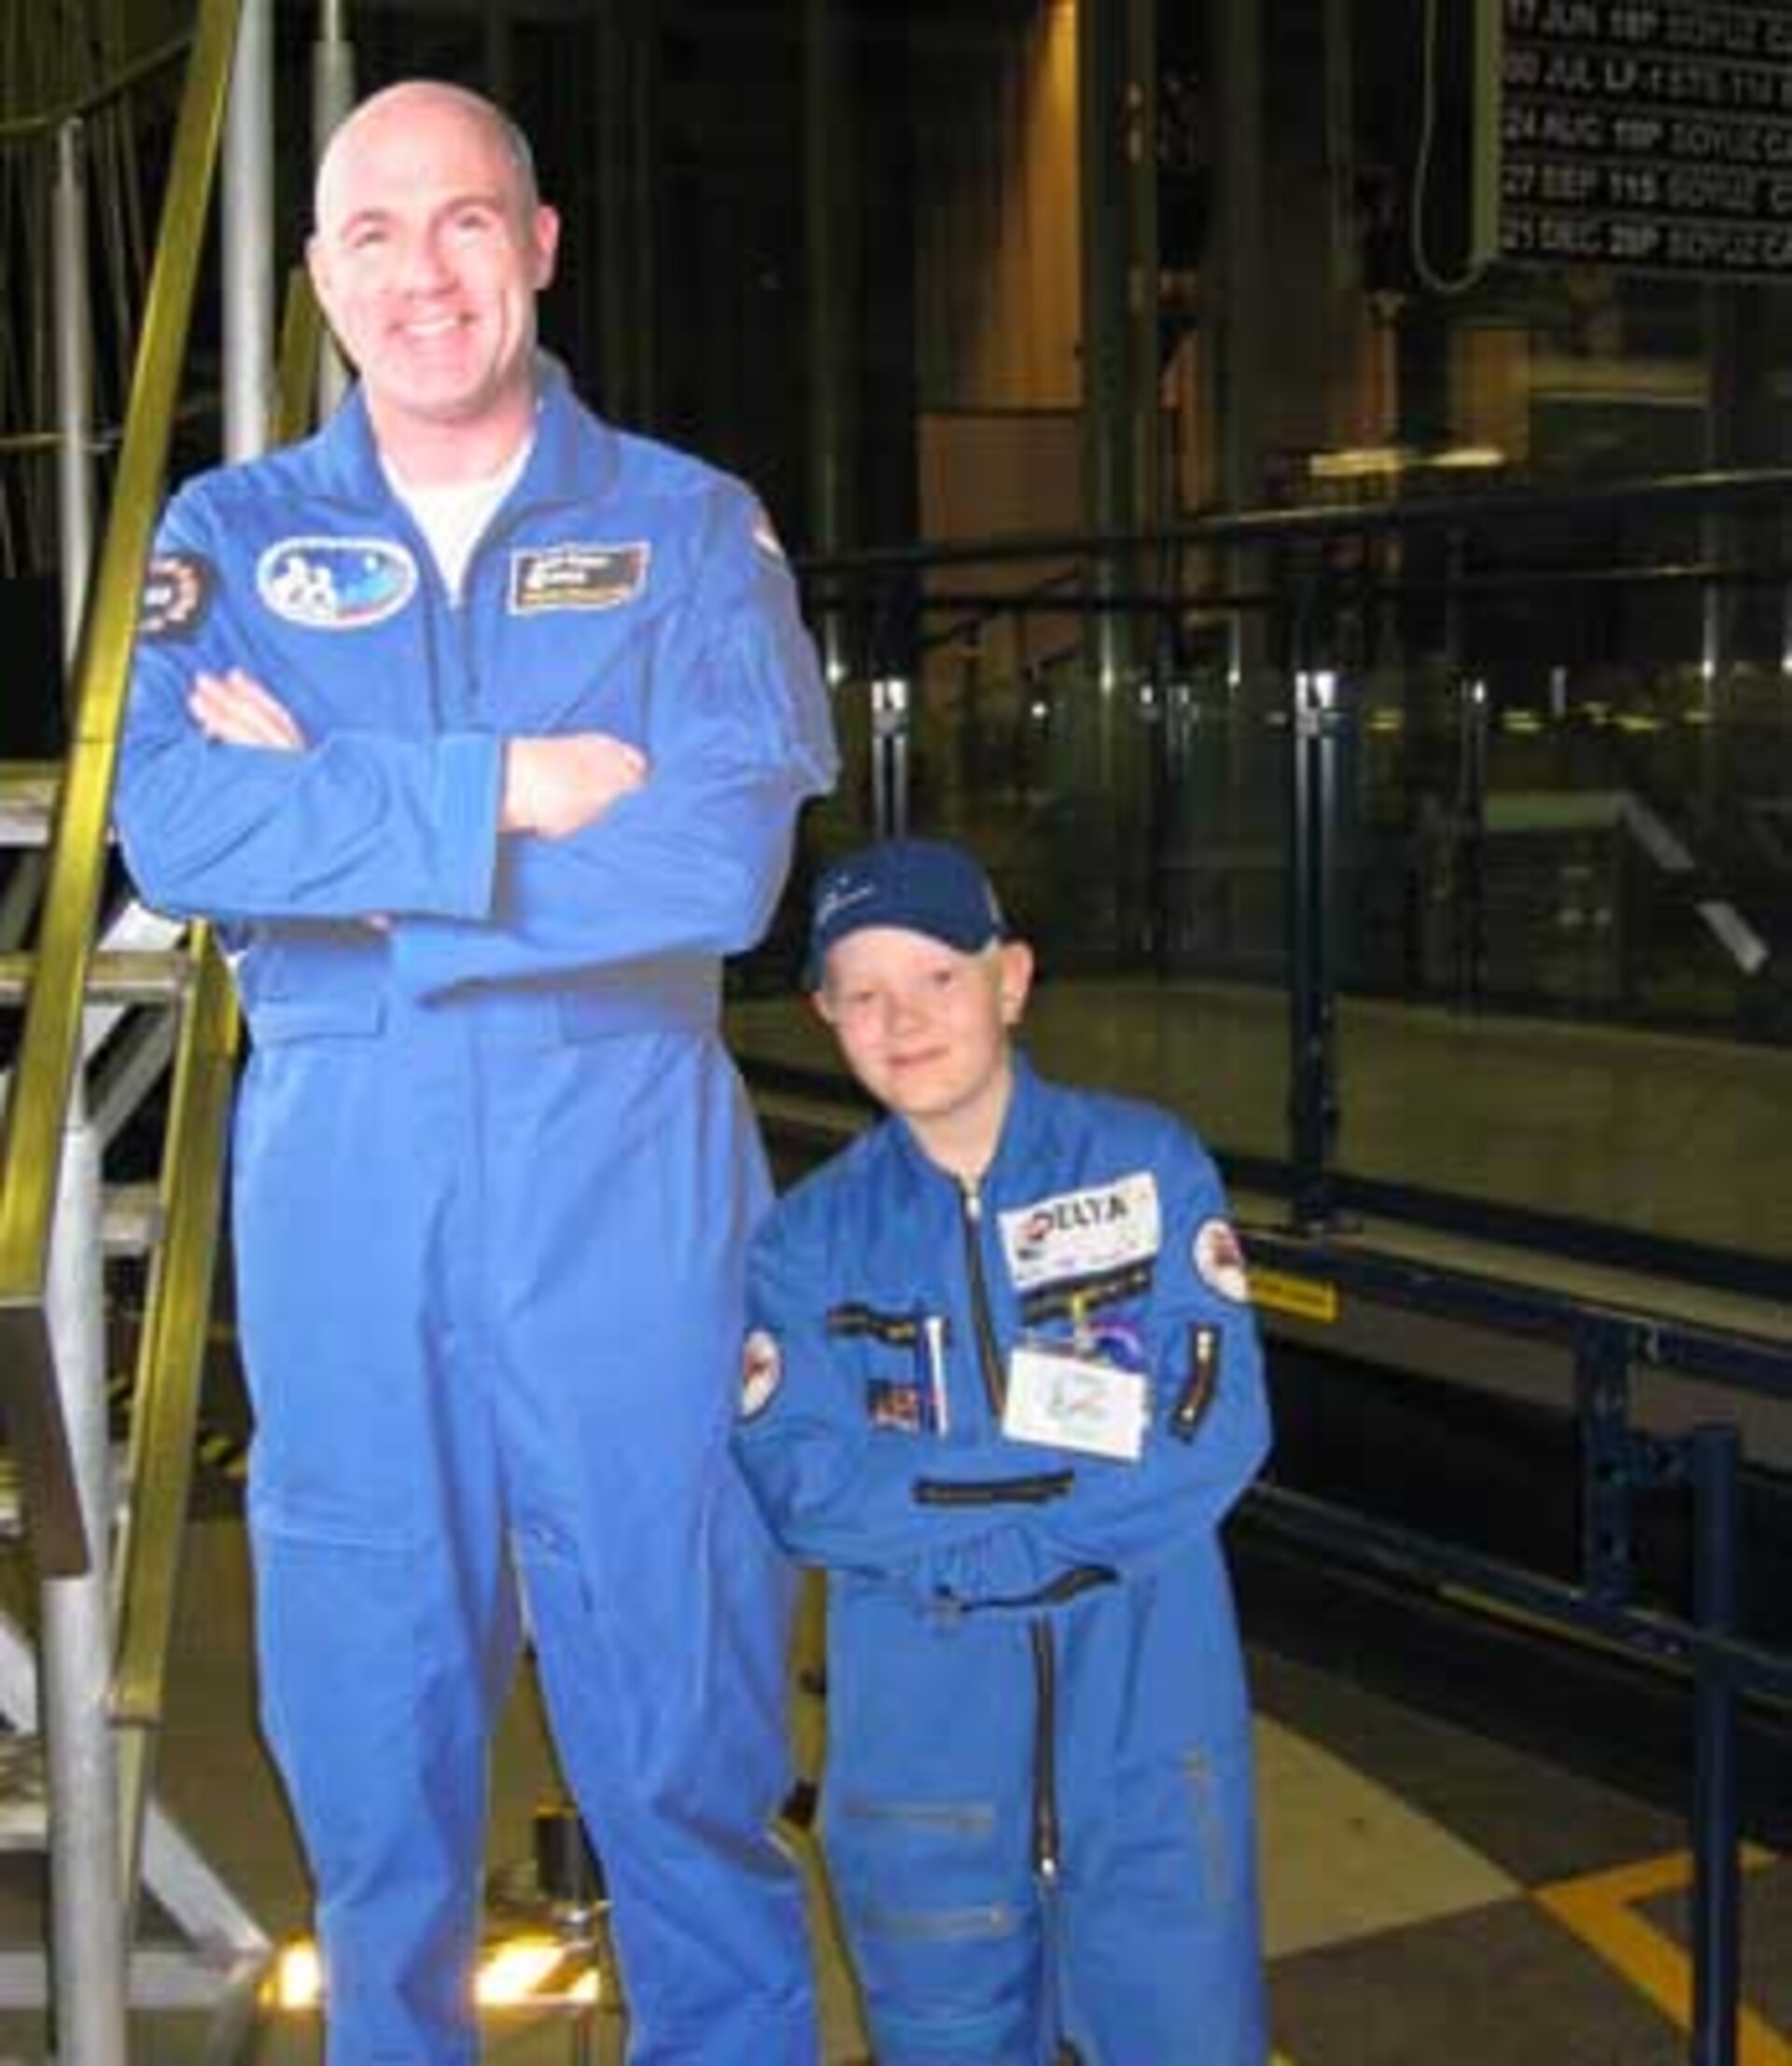 Pahvikuva esittää isoa astronauttia, André Kuipersia, ja pieni suomalaismies Jarkko Muhli poseeraa vieressä.